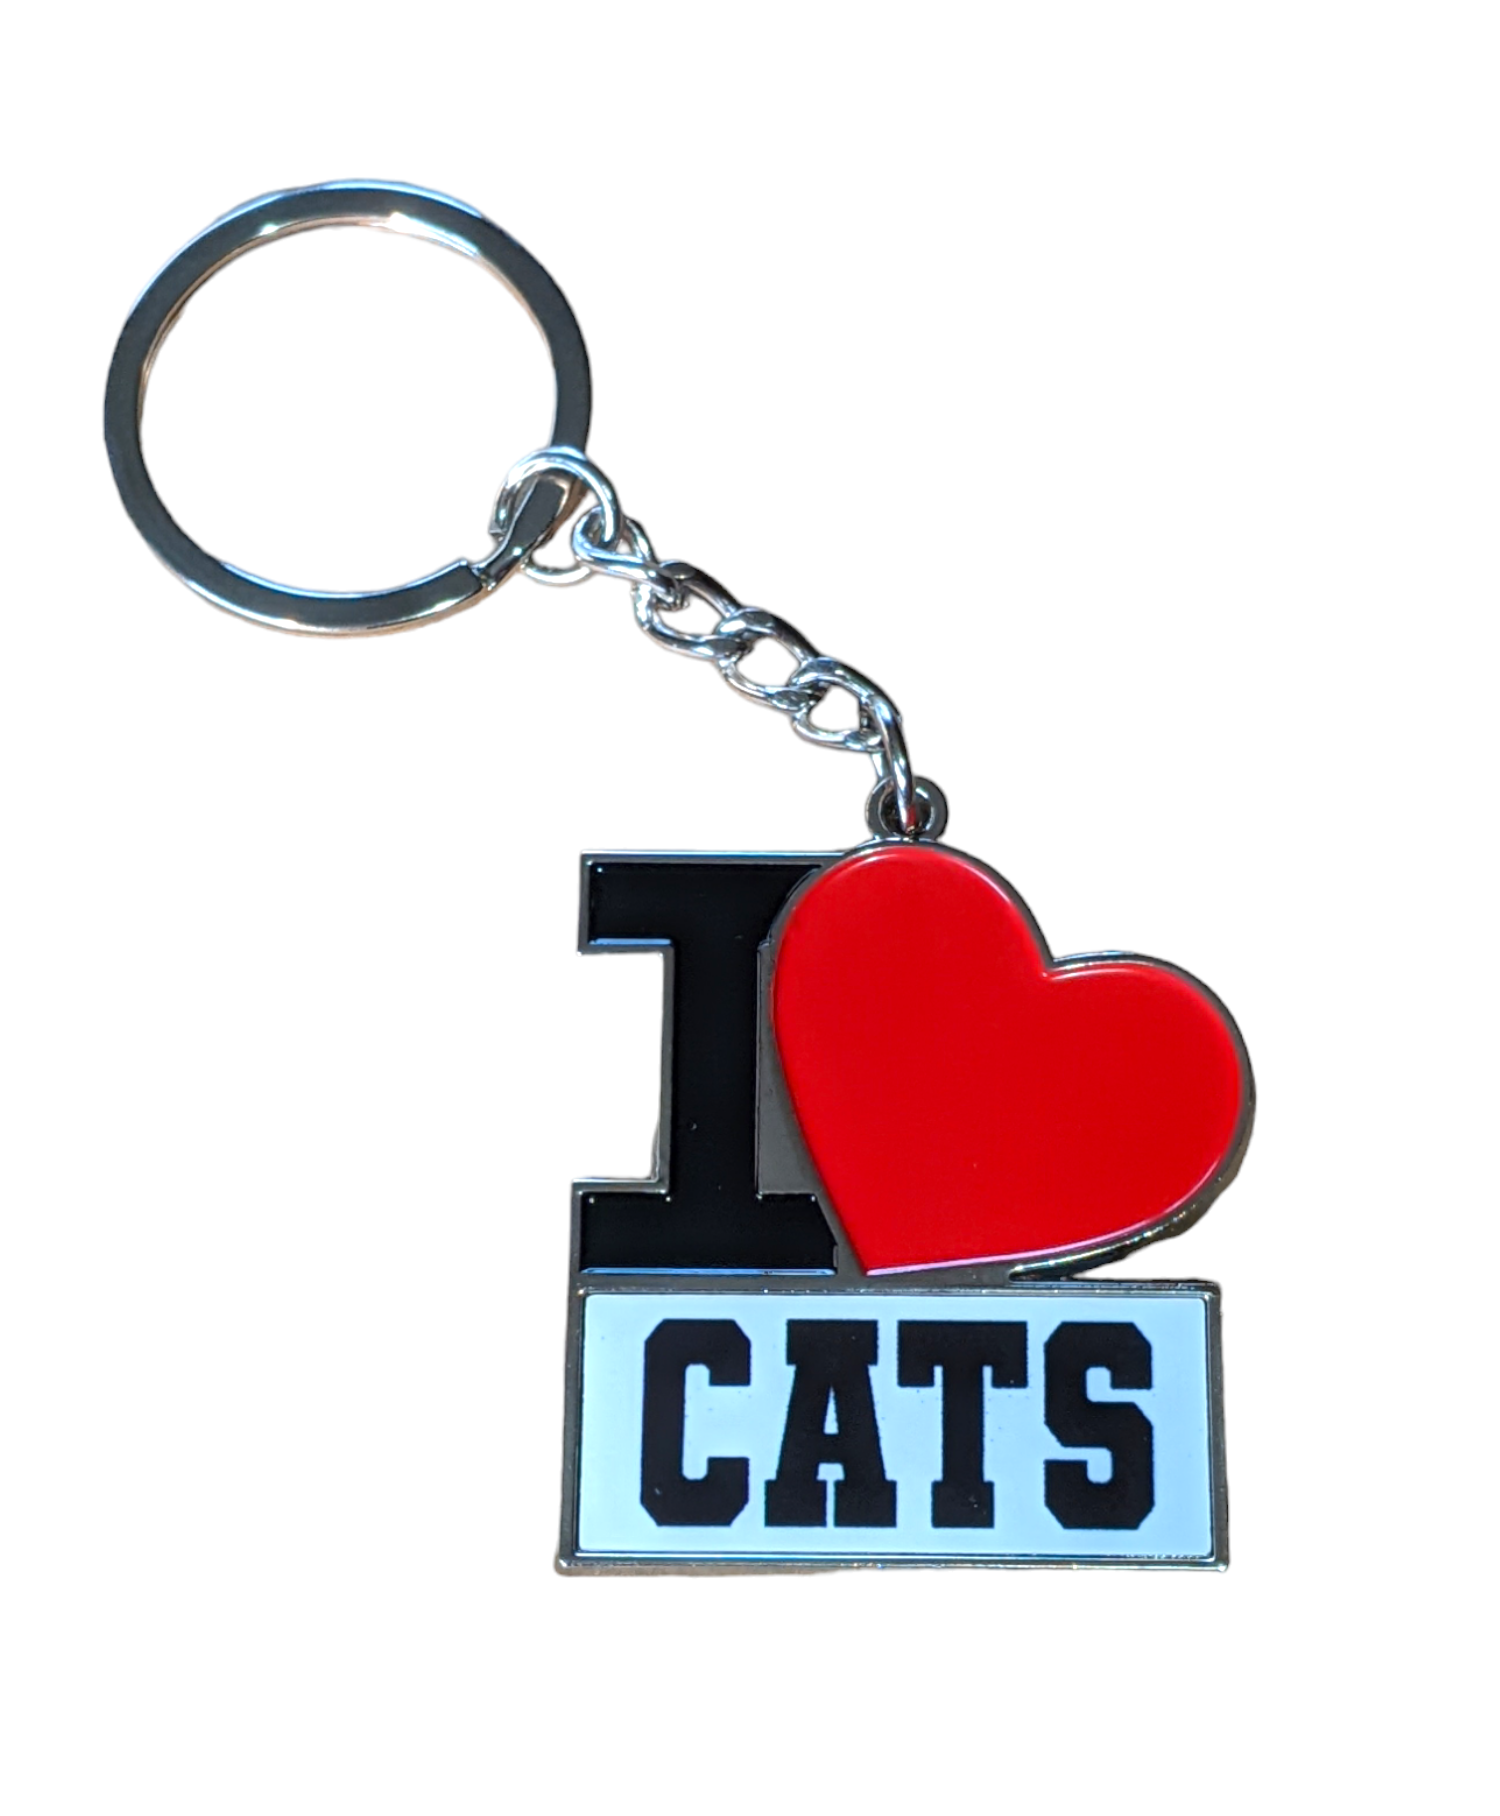 I Heart Cats keychain